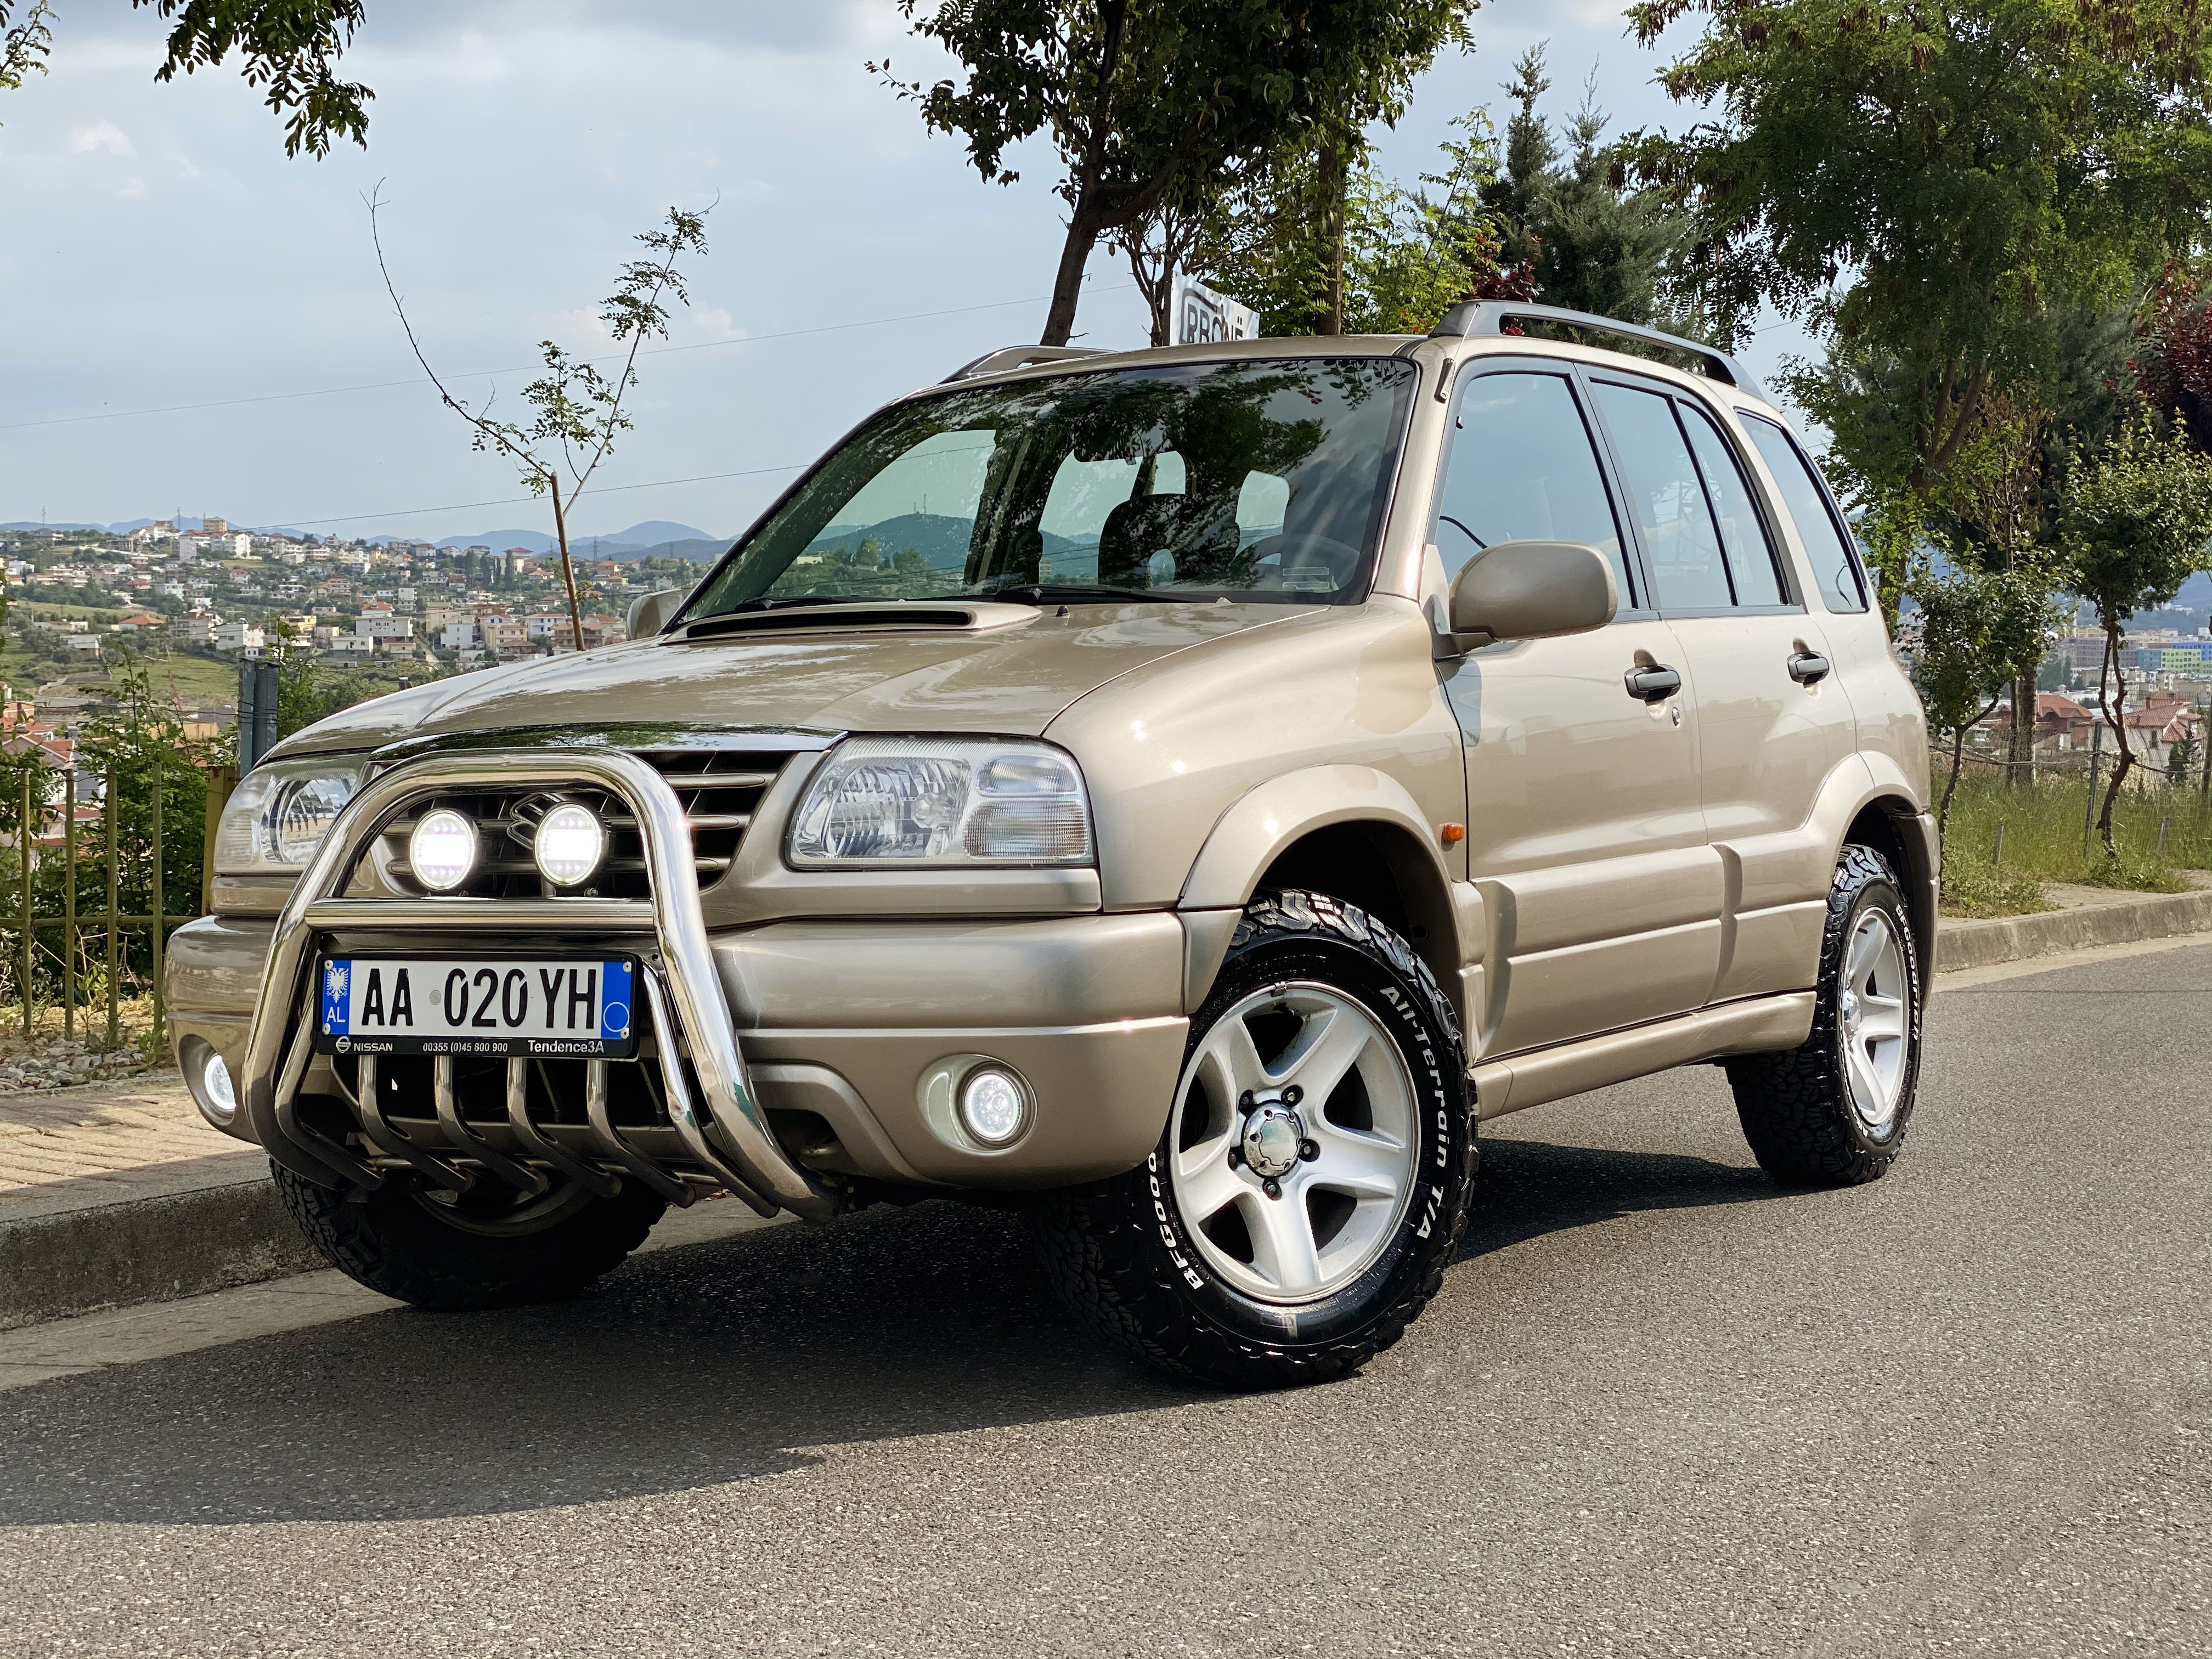 2003 Suzuki Grand Vitara në shitje në Shqipëria Makina.al